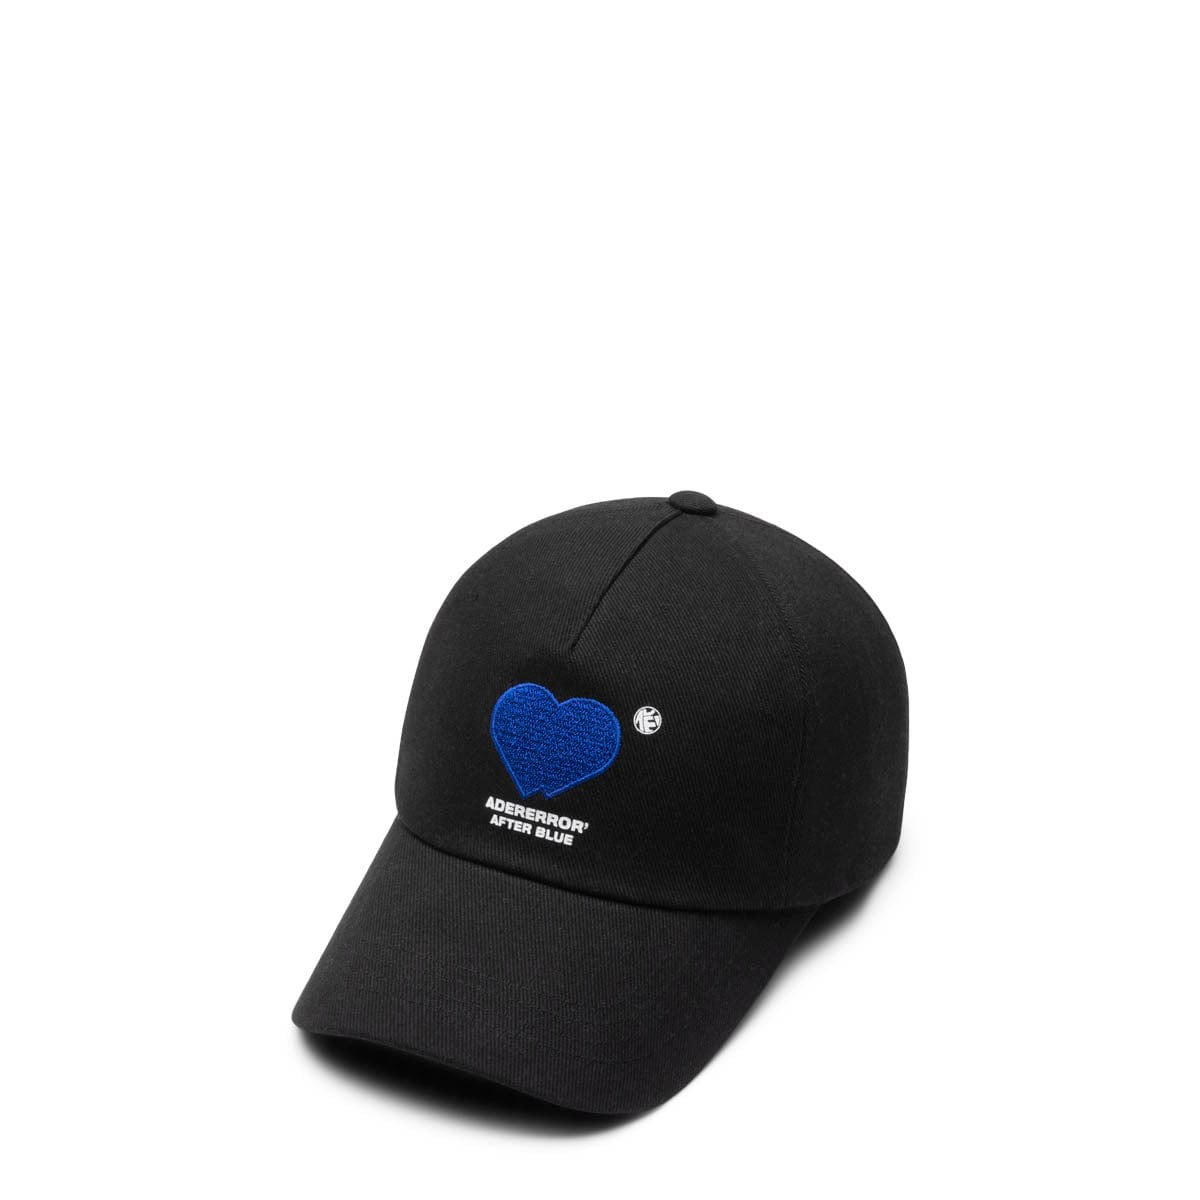 Ader Error Headwear BLACK / A2 BLASSCA03BK HAT